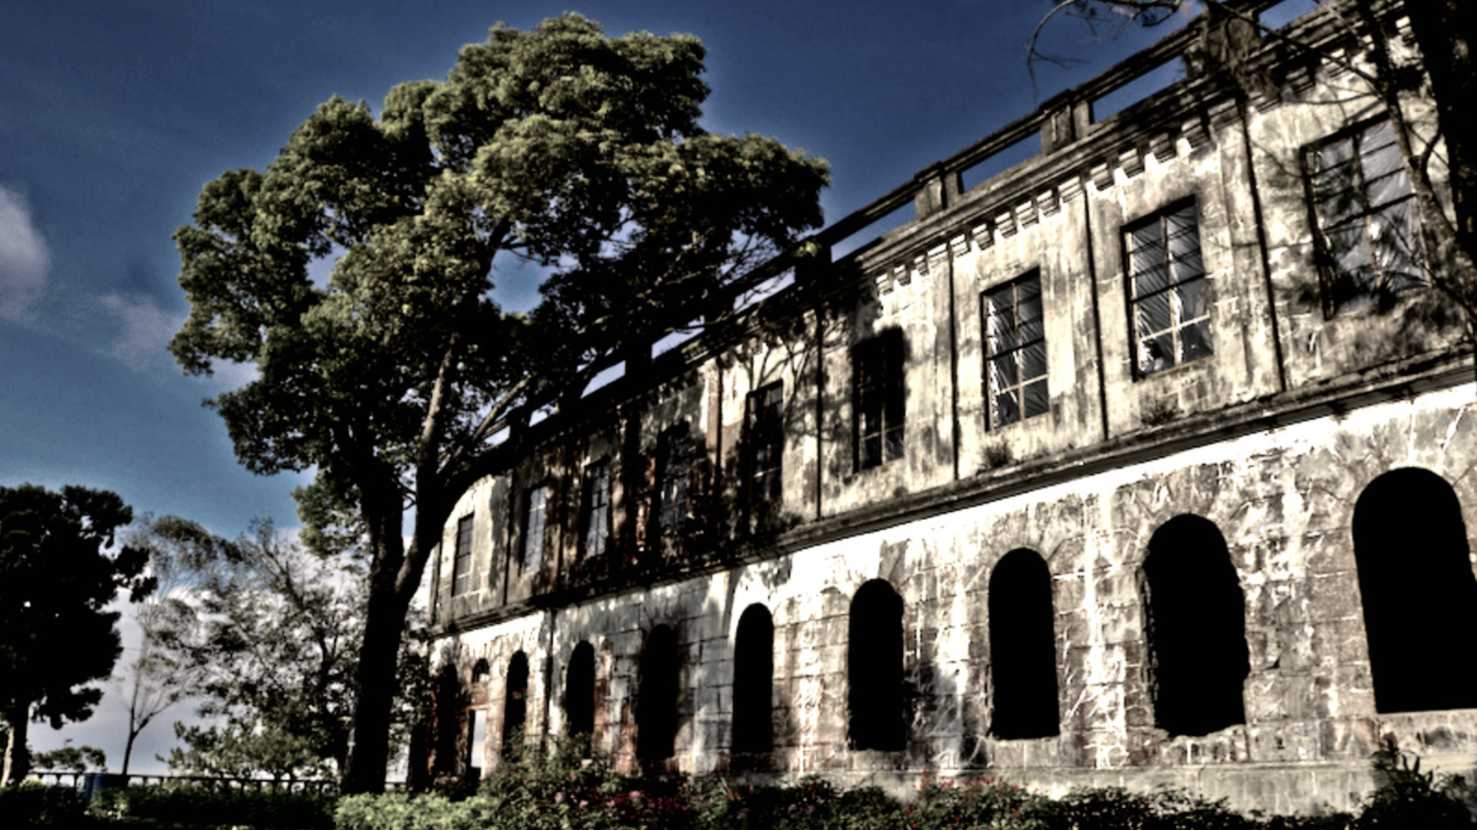 Carita ngageter tulang tukangeun Hotel Diplomat Kota Baguio, Pilipina 1